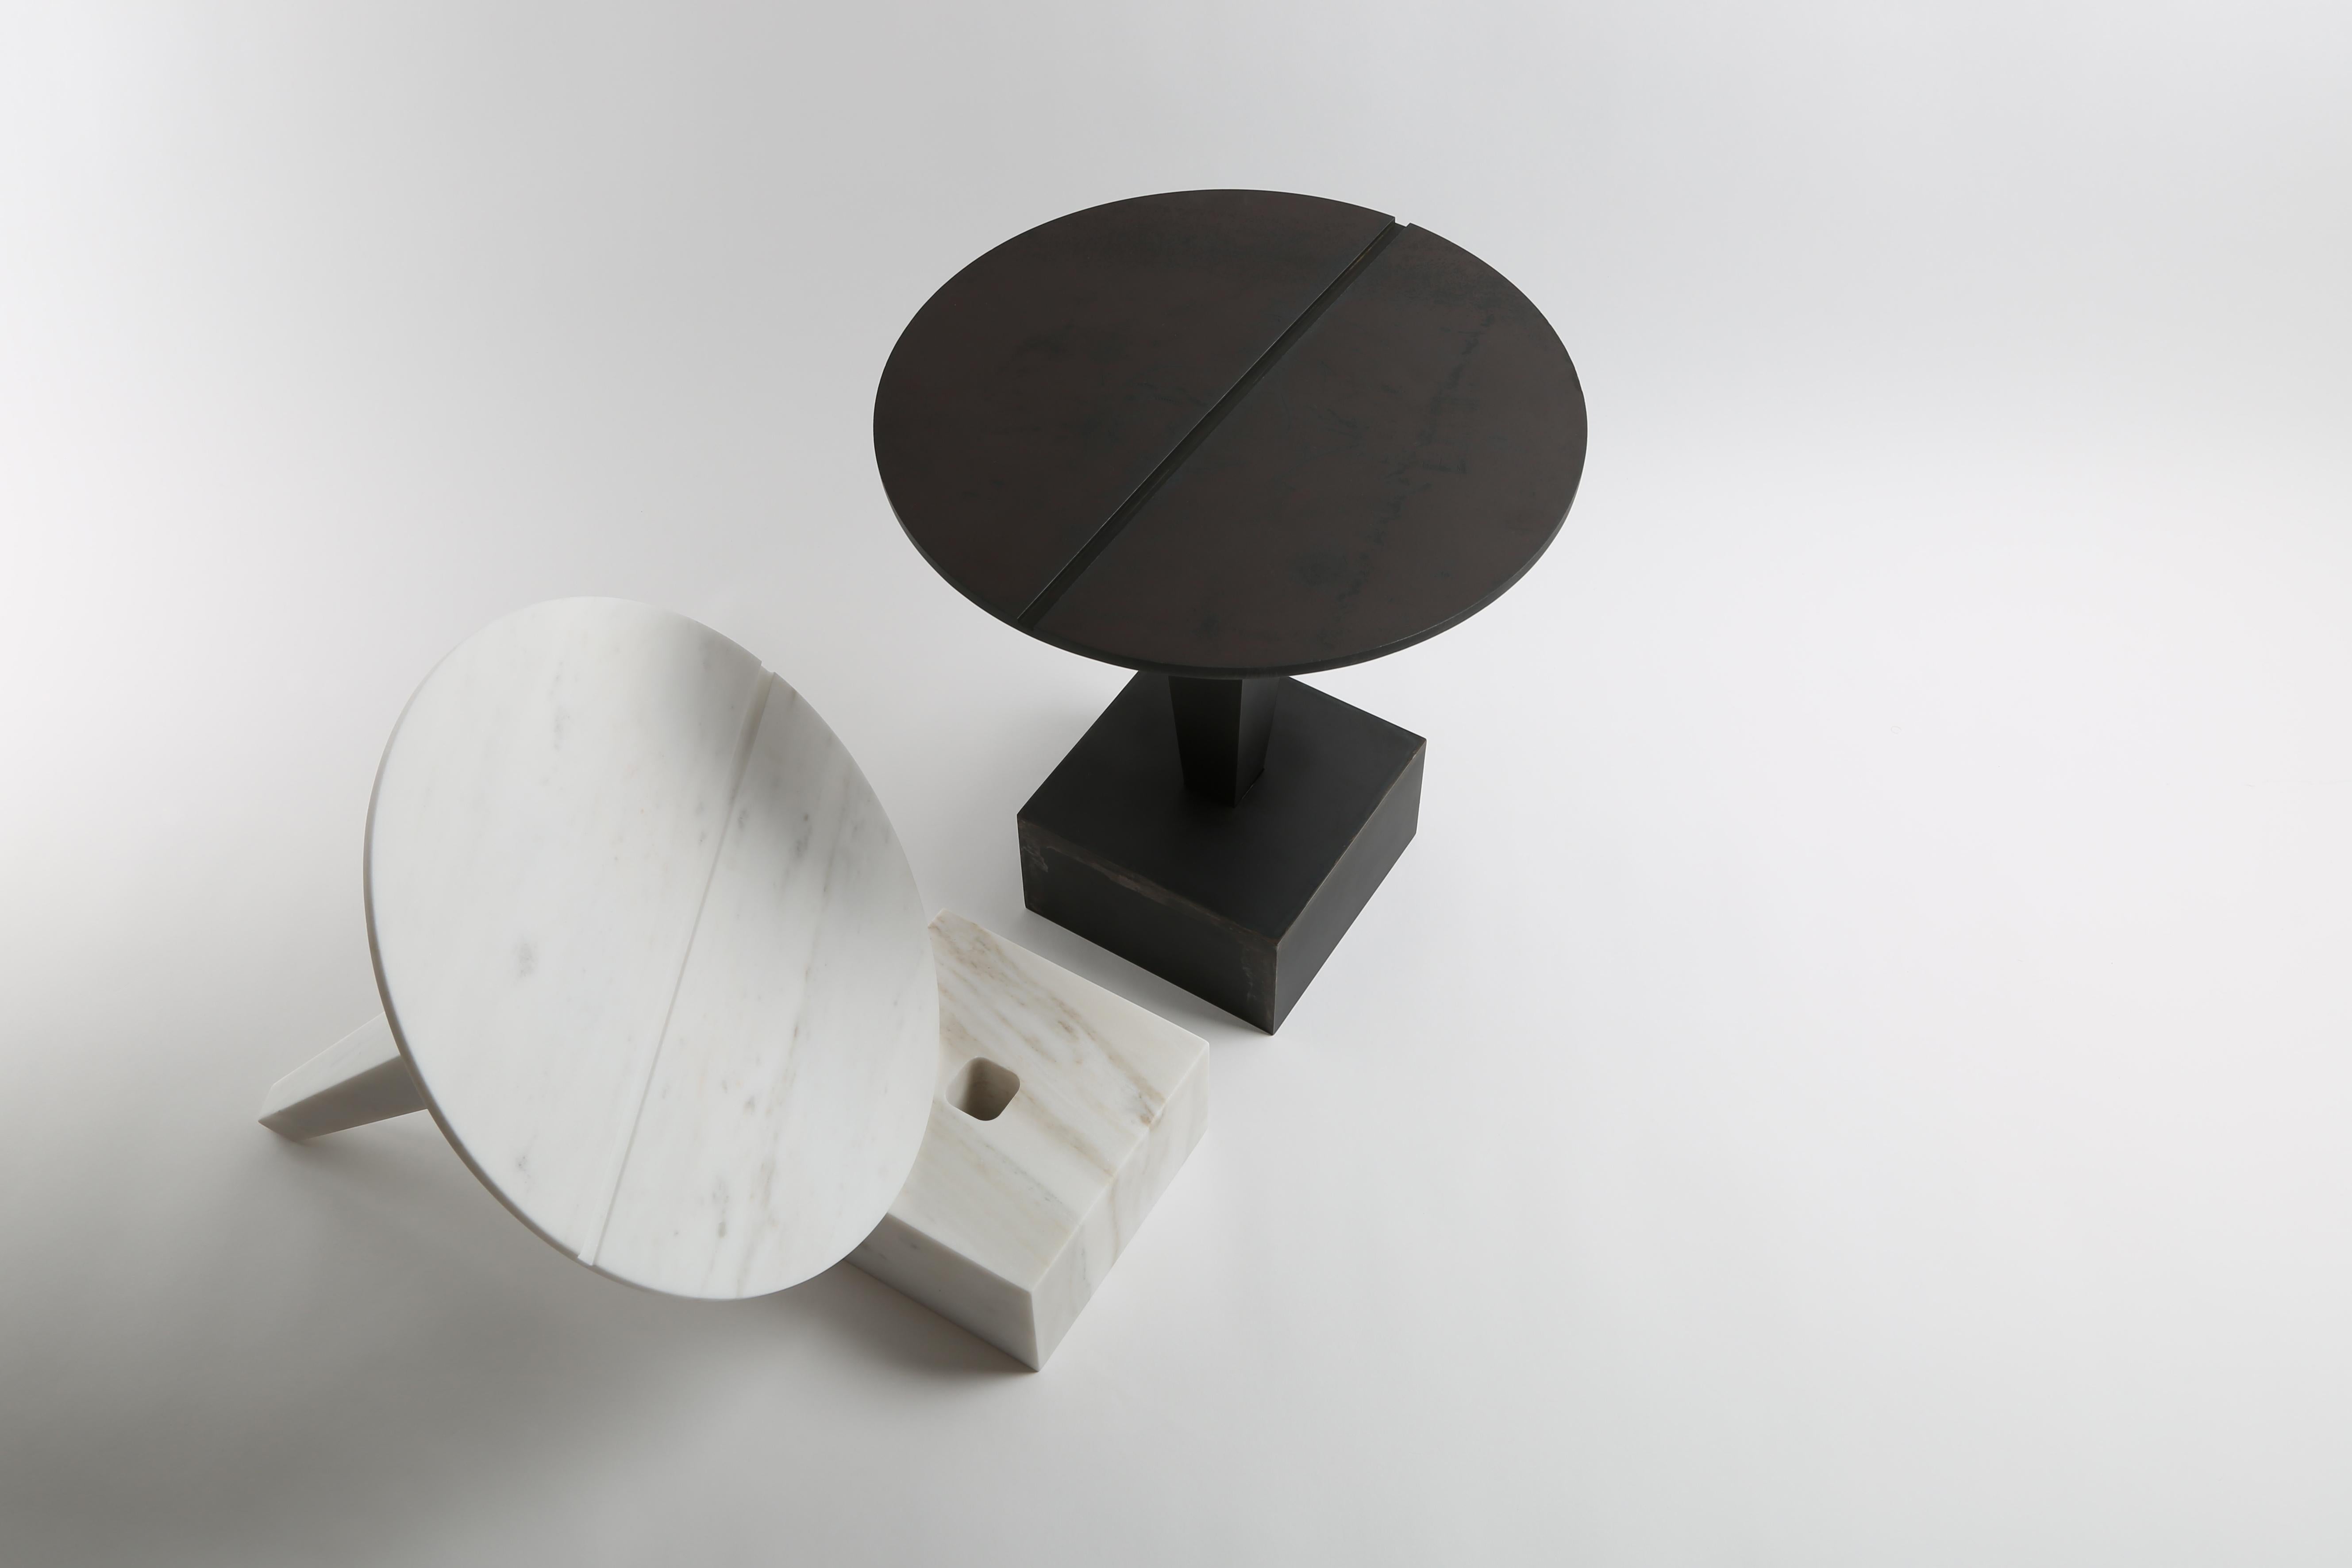 Ensemble de tables d'appoint Clou de Richard Yasmine
MATERIAL : marbre pentélique massif
Dimensions : 44 x 40 cm

Un clou est une pièce métallique allongée utilisée pour relier deux objets l'un à l'autre. Il se compose d'une extrémité plate, parfois